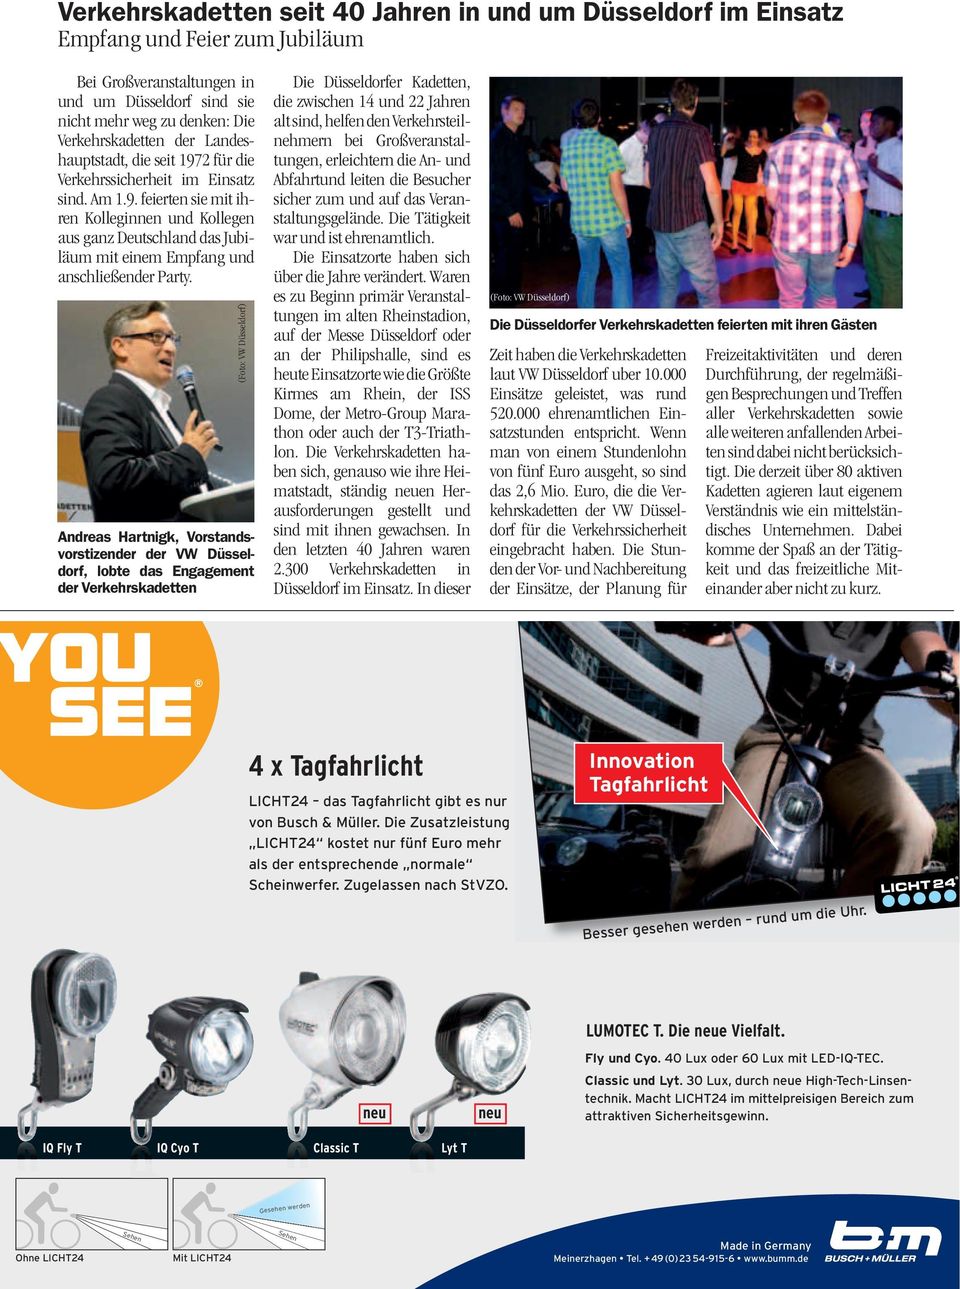 (Foto: VW Düsseldorf) Andreas Hartnigk, Vorstandsvorstizender der VW Düsseldorf, lobte das Engagement der Verkehrskadetten Die Düsseldorfer Kadetten, die zwischen 14 und 22 Jahren alt sind, helfen